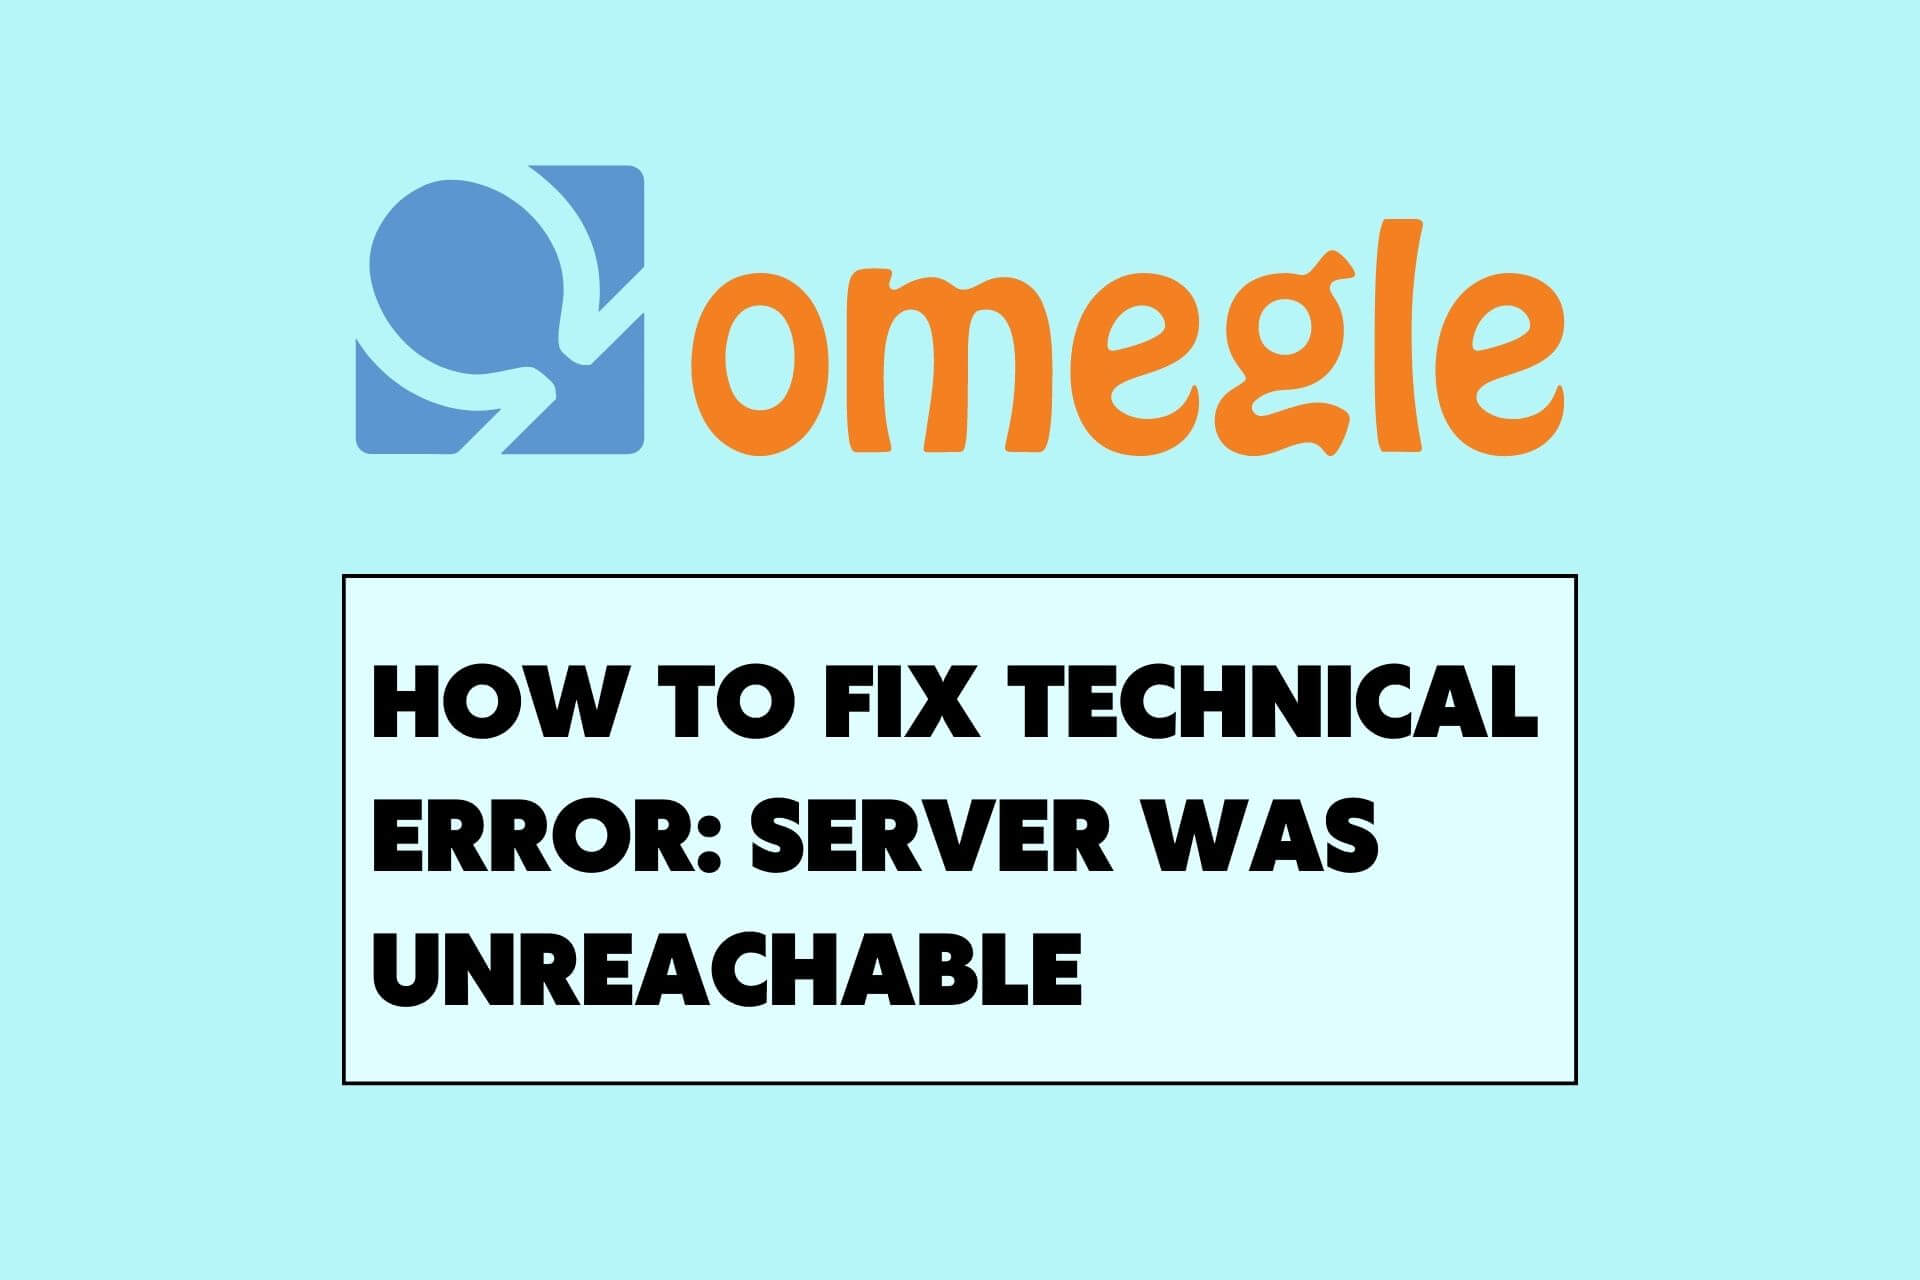 omegle technical error server was unreachable